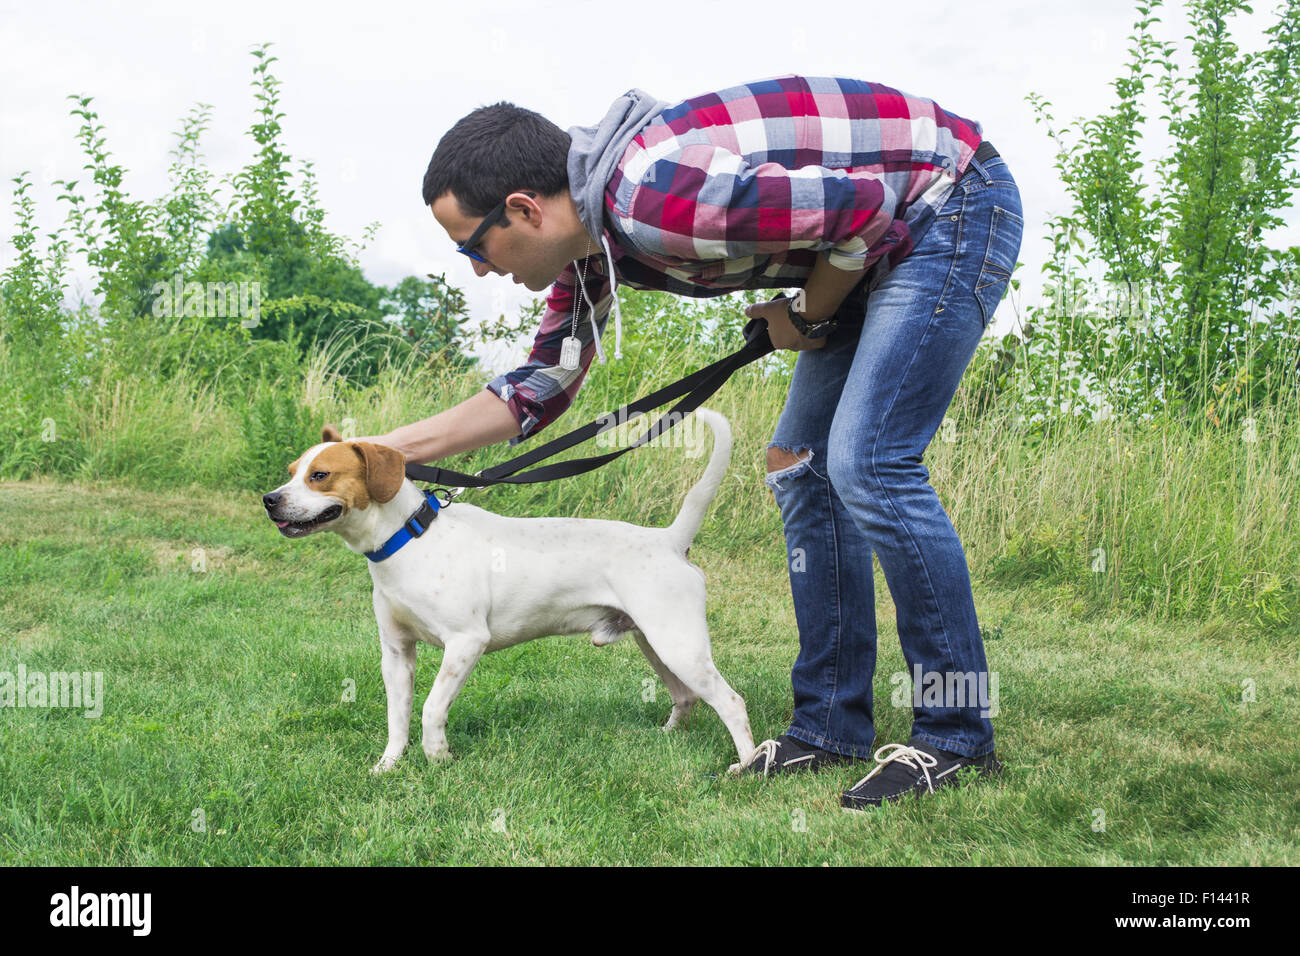 Un hombre joven adiestra a un perro de tamaño mediano. Foto de stock